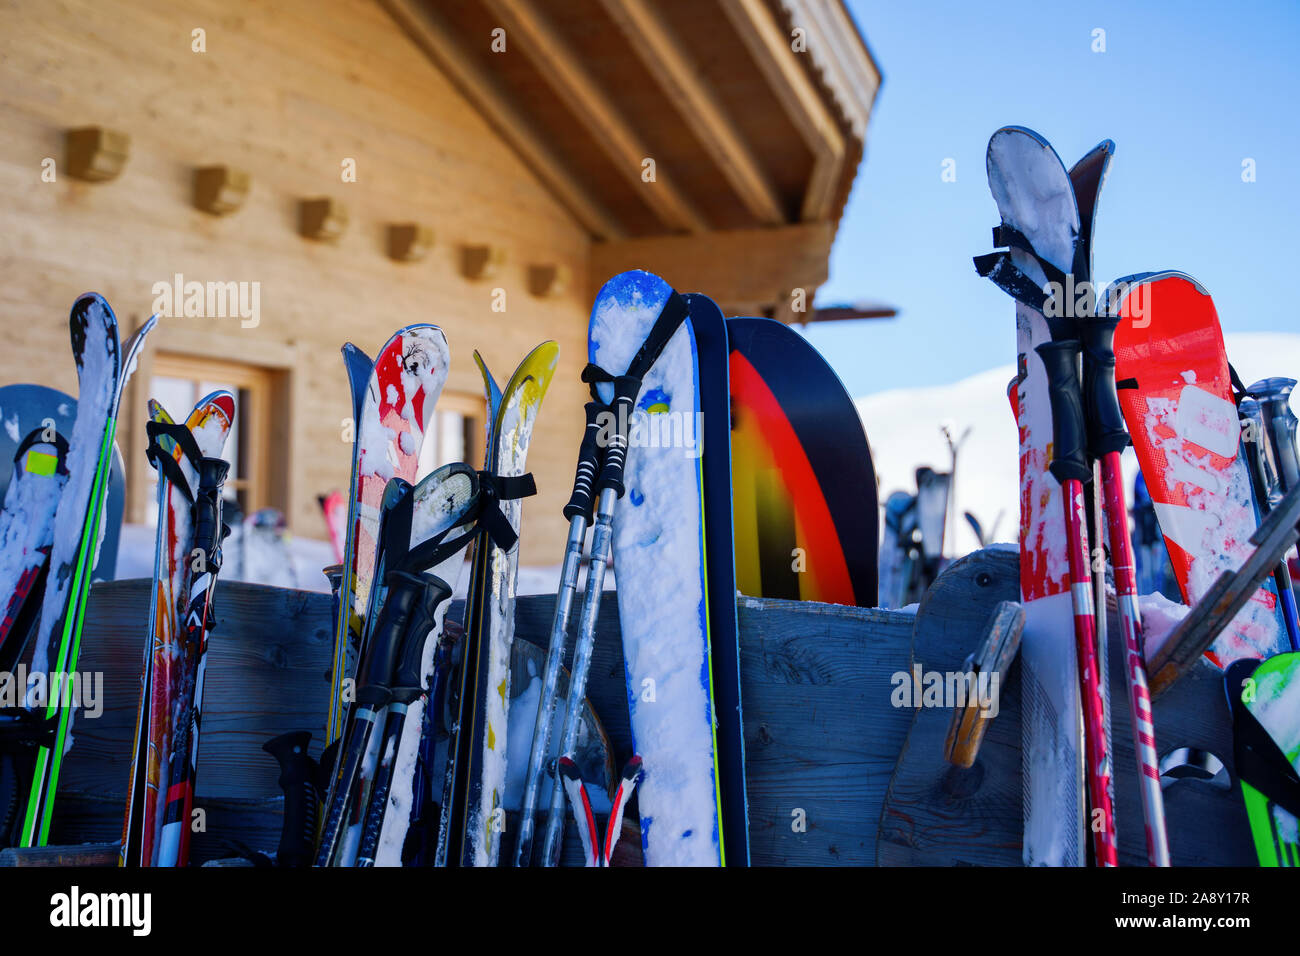 Imagen de multicolores de esquí y snowboard en nieve en invierno en la tarde. Fondo difuminado. Foto de stock